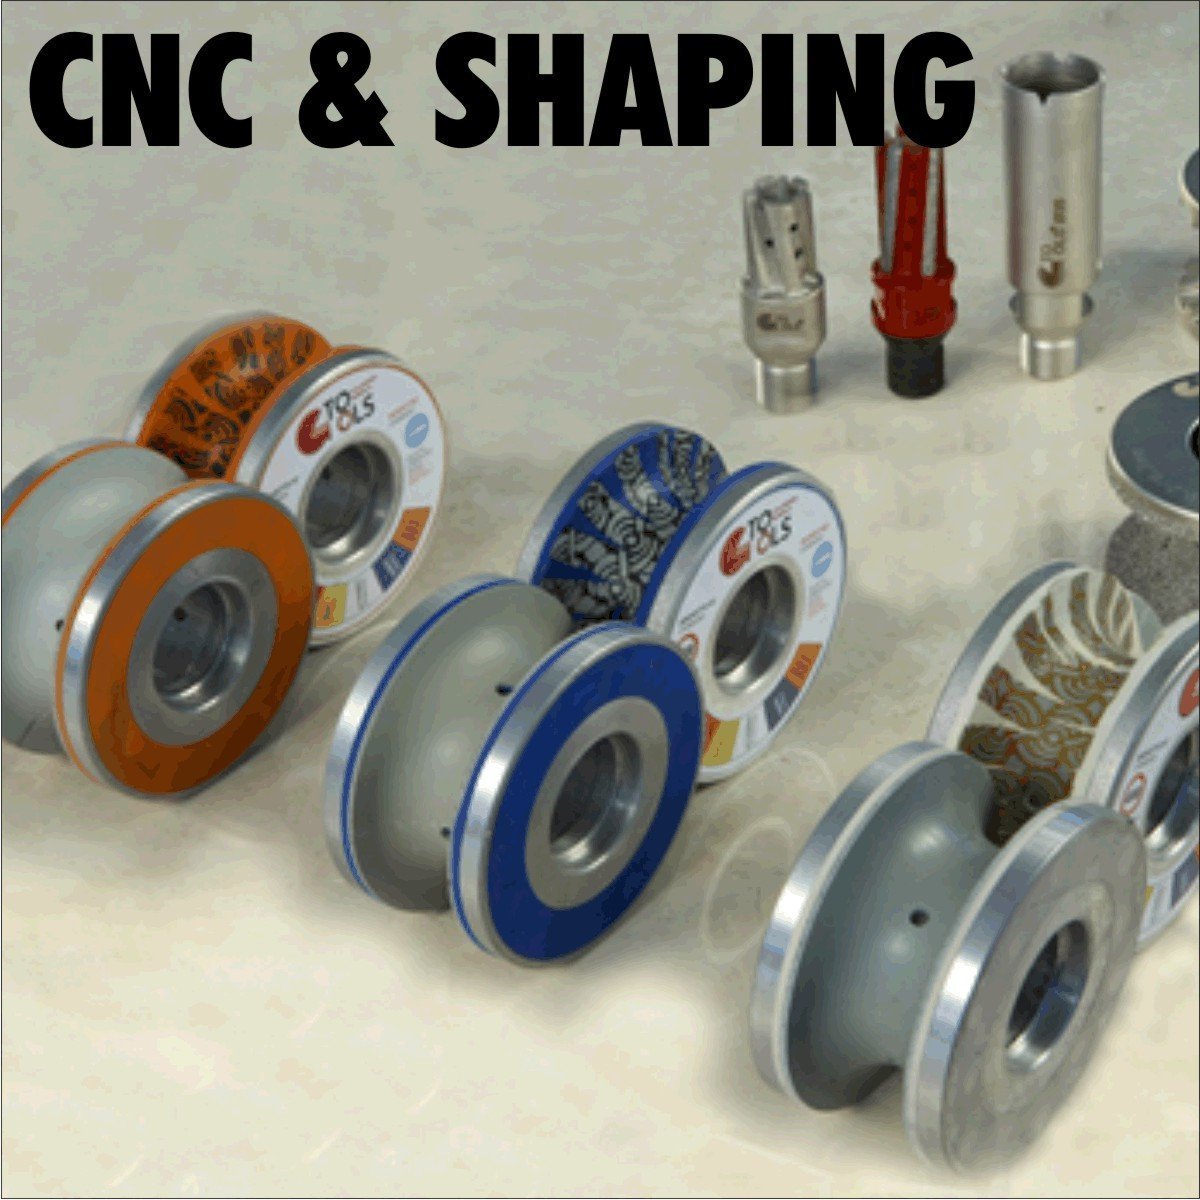 CNC & Shaping Tools